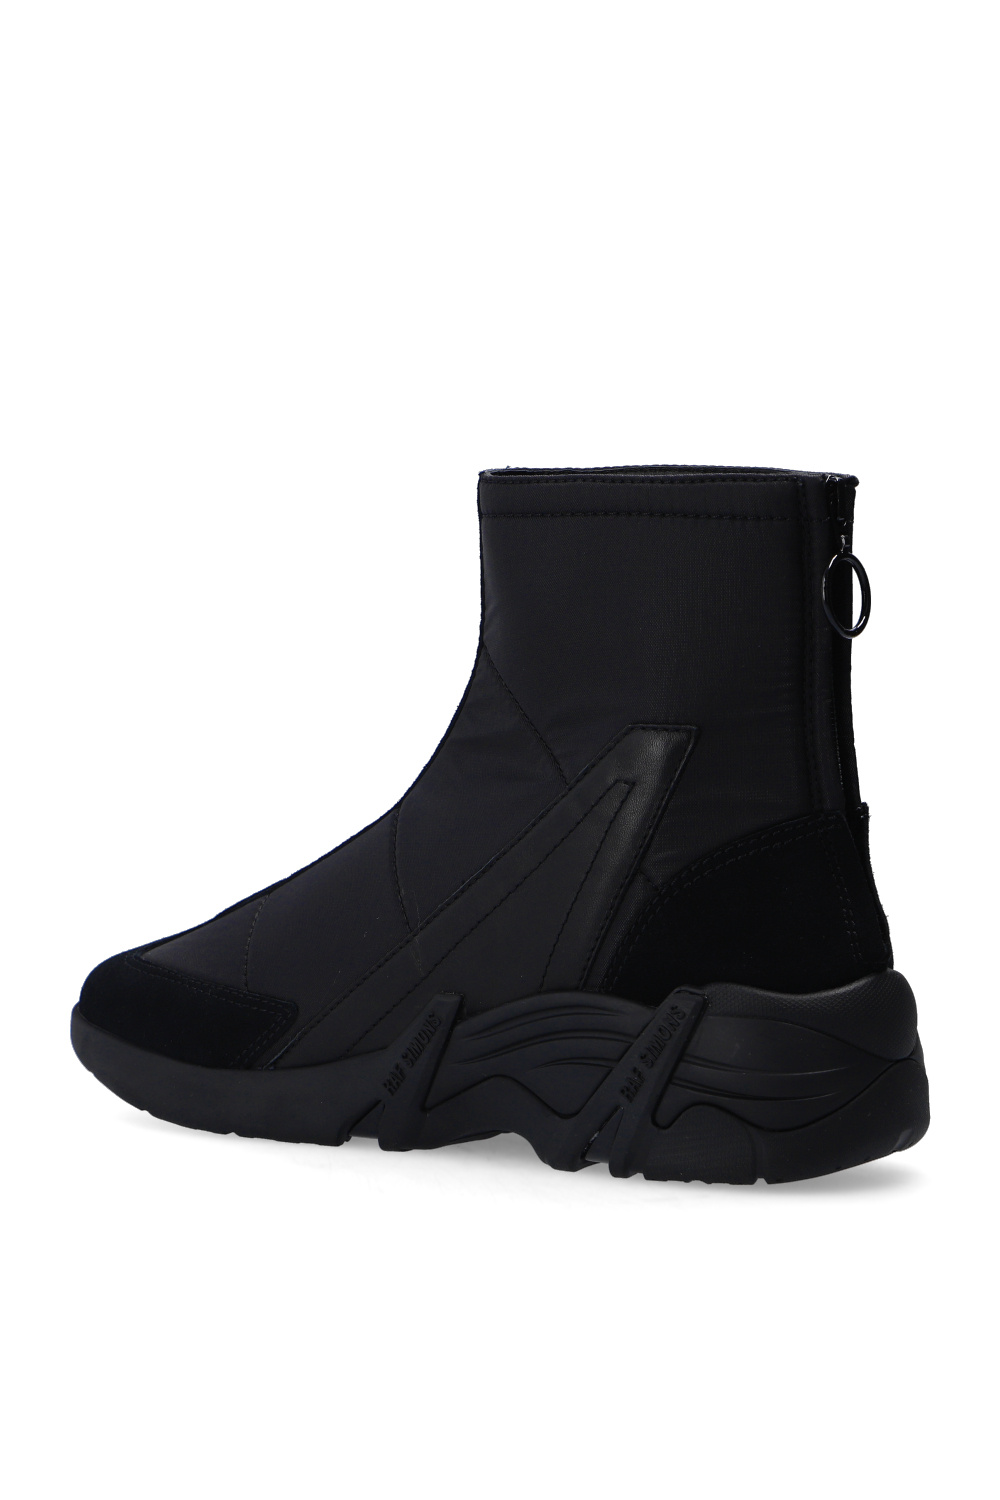 Raf Simons ‘Cylon-22’ high-top sneakers | Men's Shoes | Vitkac